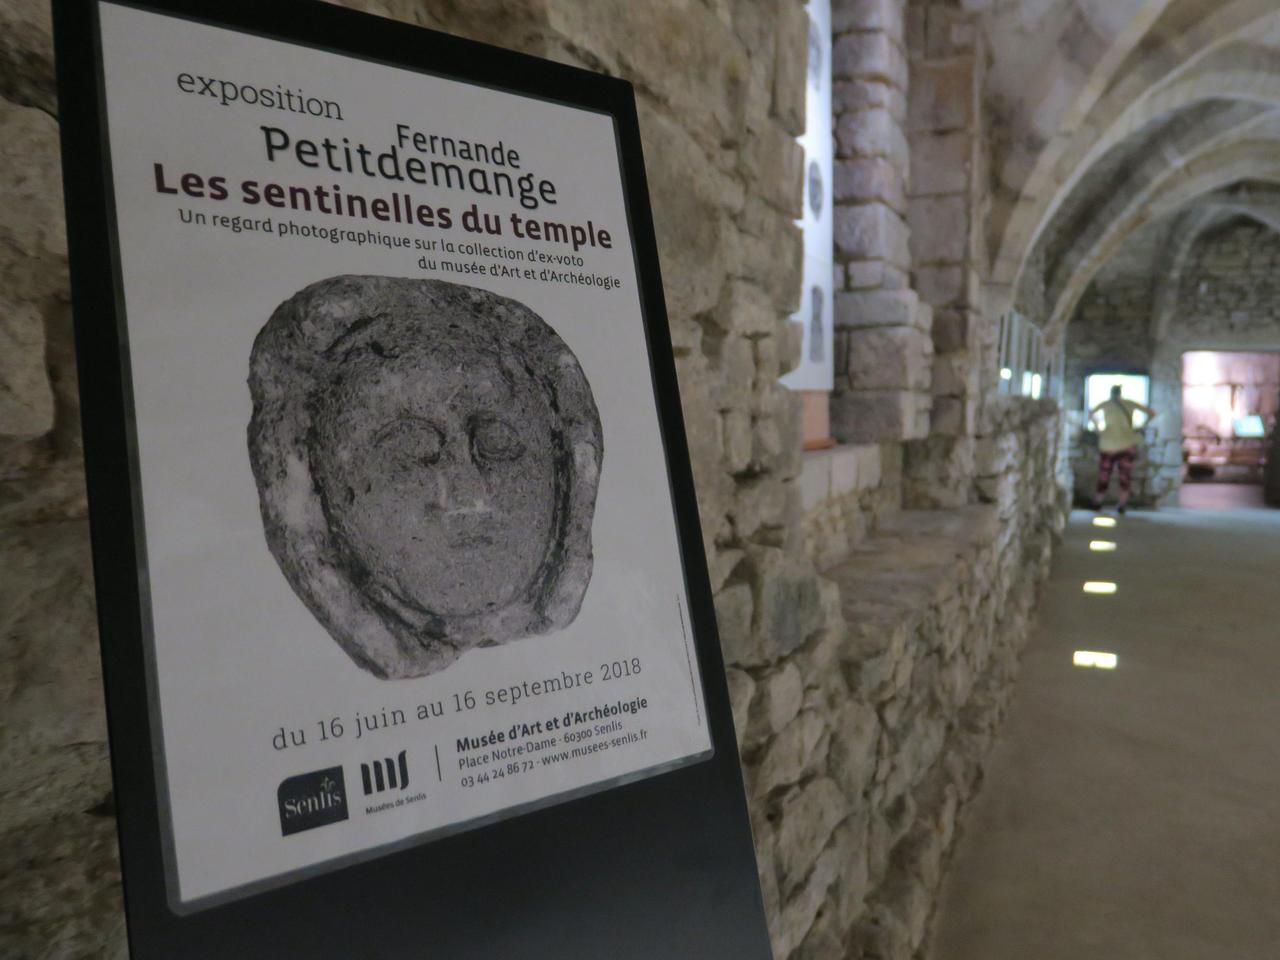 L'exposition photographique « Les sentinelles du temple » de Fernande Petitdemange s'intéresse à la collection d'ex-voto du musée de Senlis.